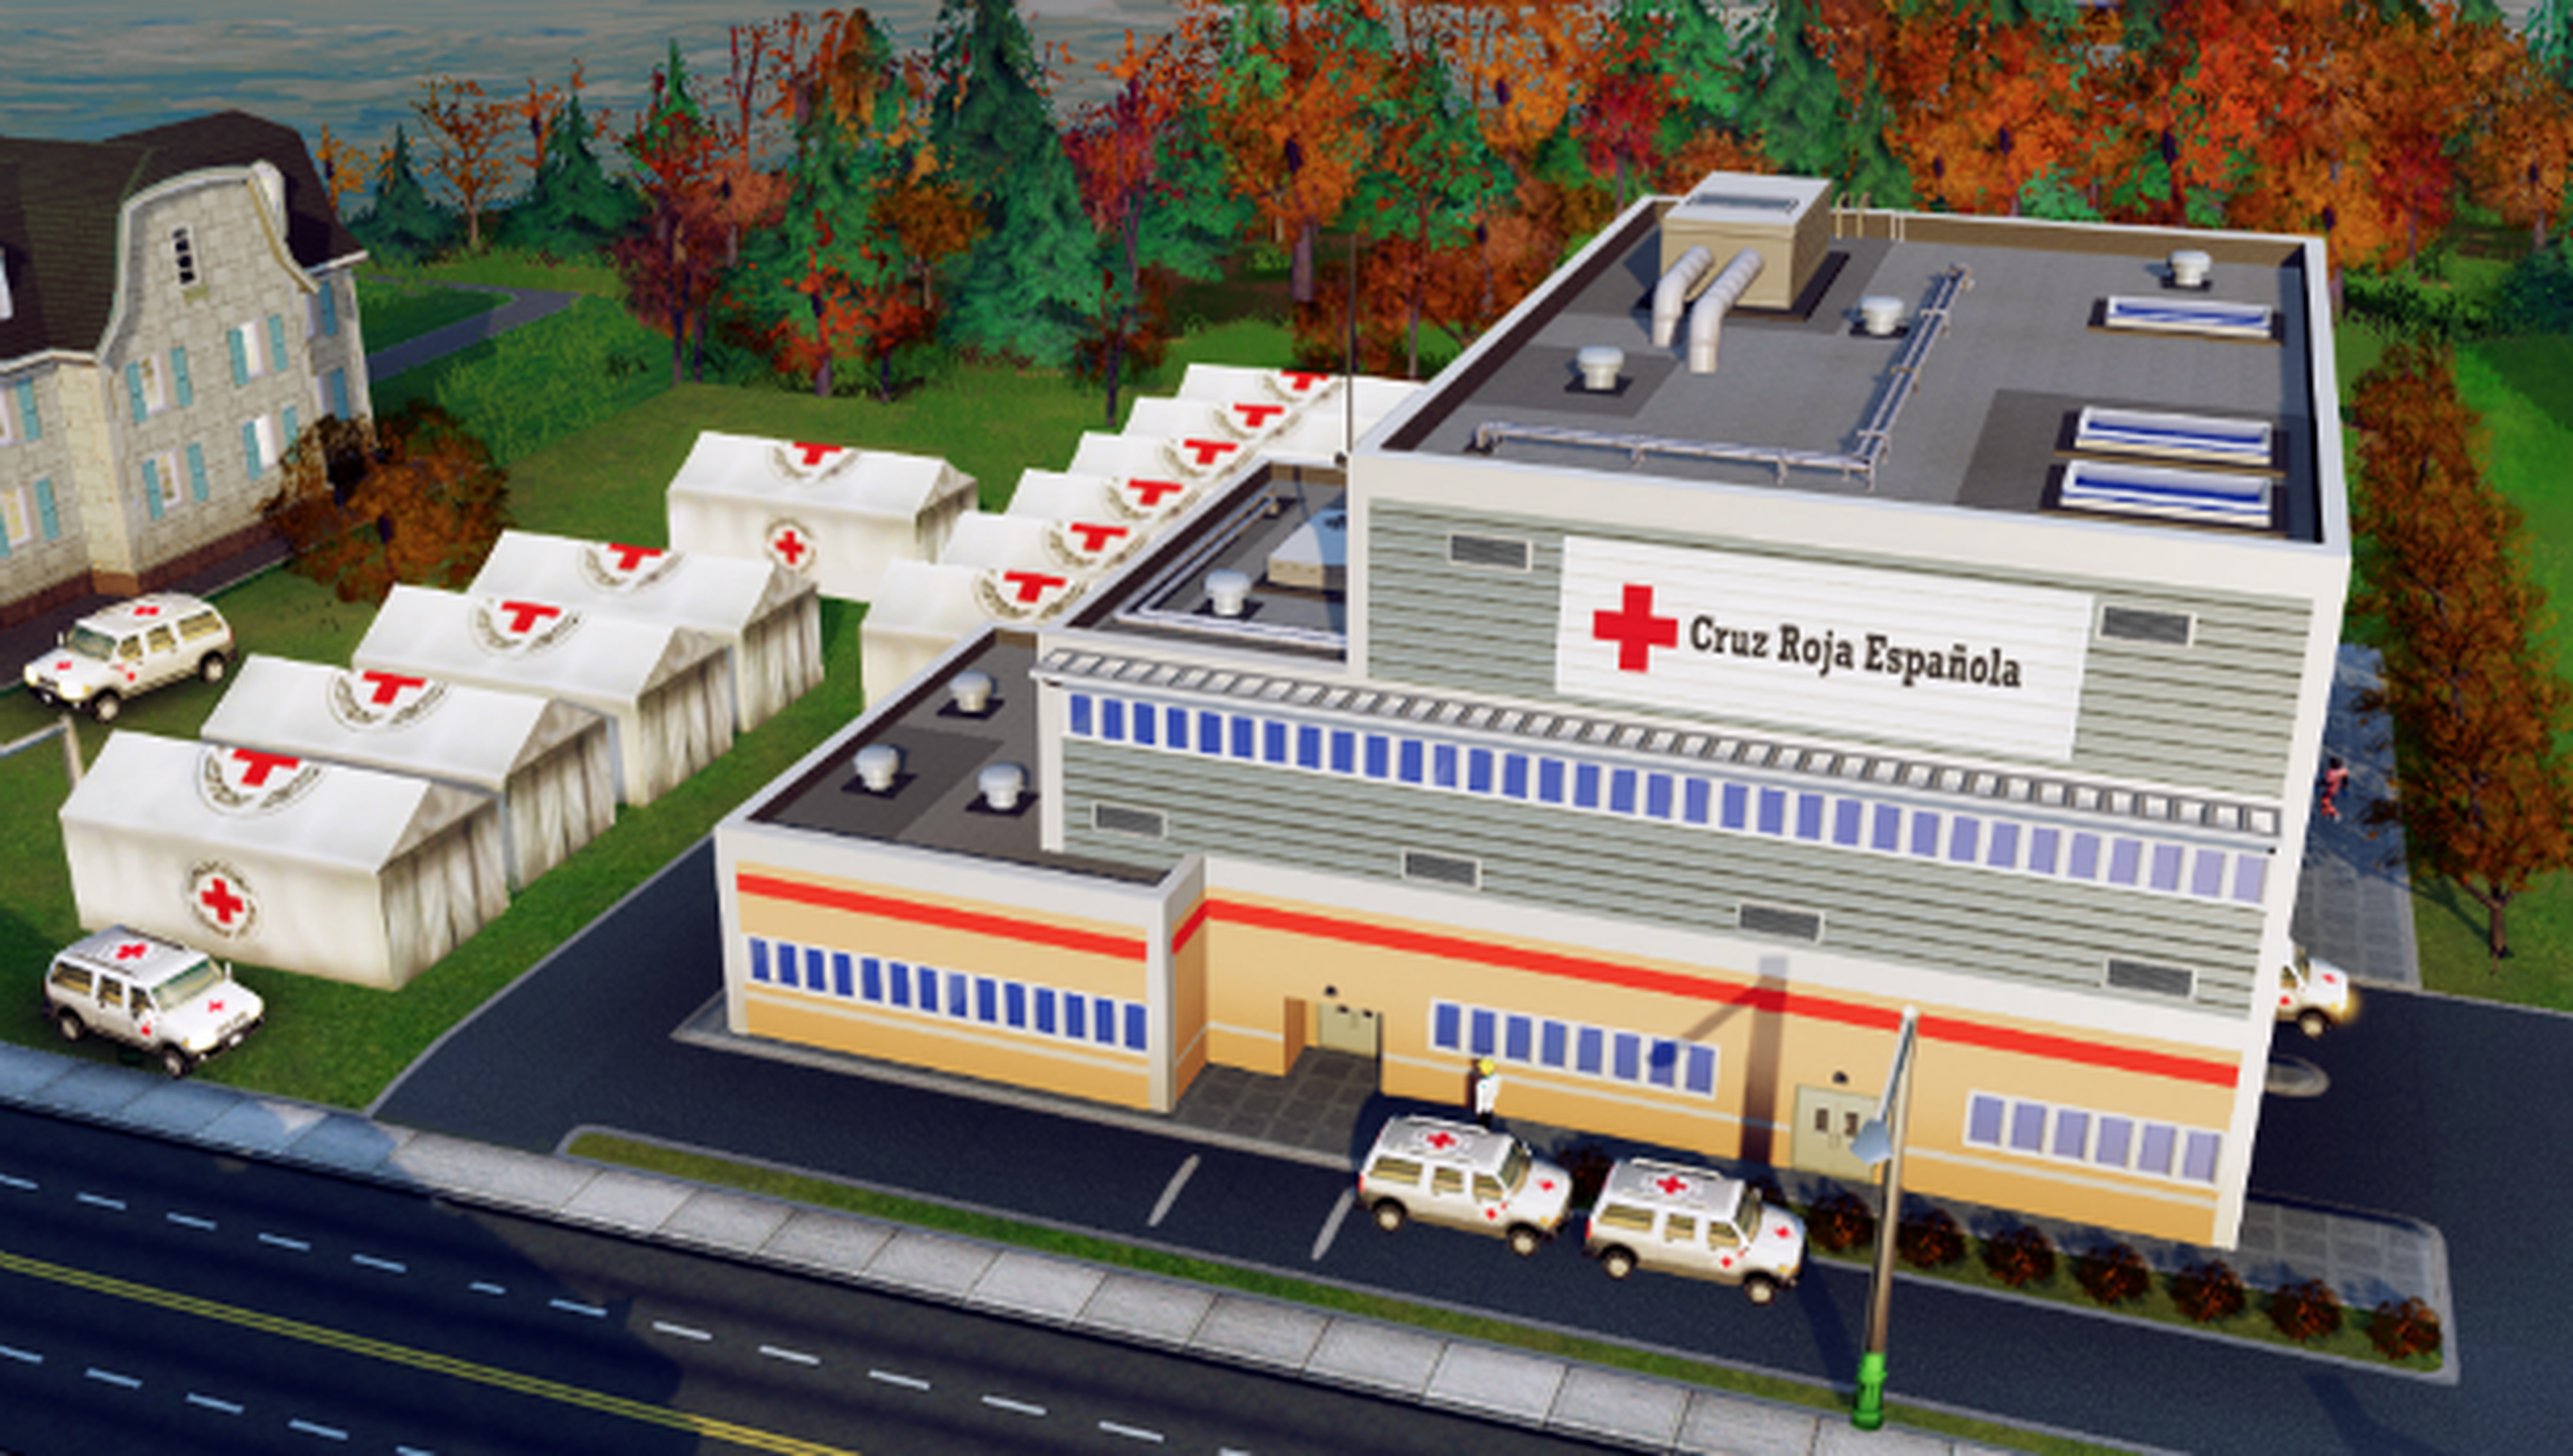 La Cruz Roja en SimCity por una buena causa